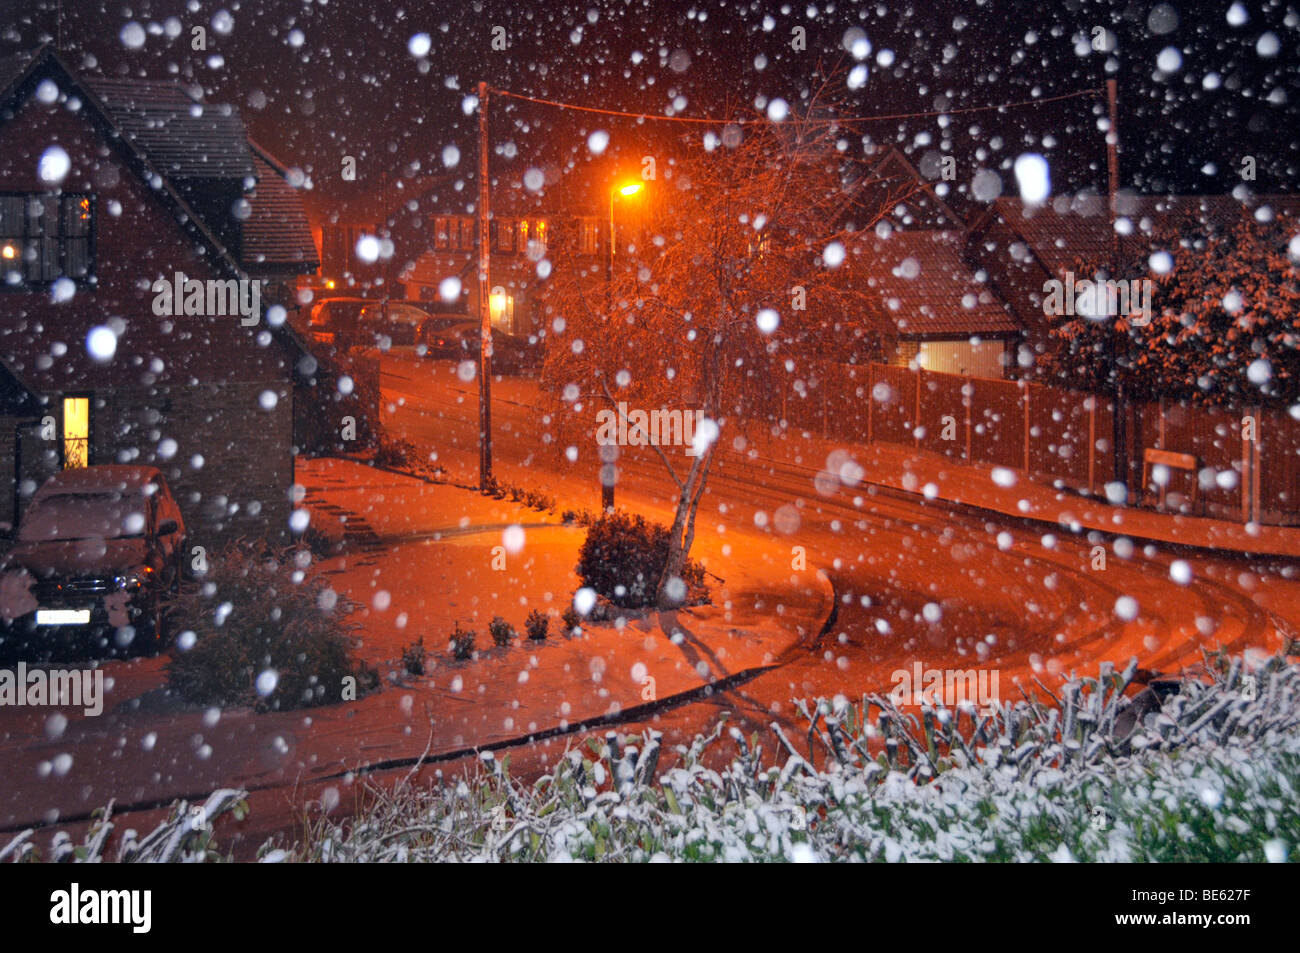 Schneeflocken durch Blitz mit orangefarbener Natriumbeleuchtung beleuchtet schneebedeckte Nacht Wohnstraße Landschaft Brentwood Essex England Großbritannien Stockfoto